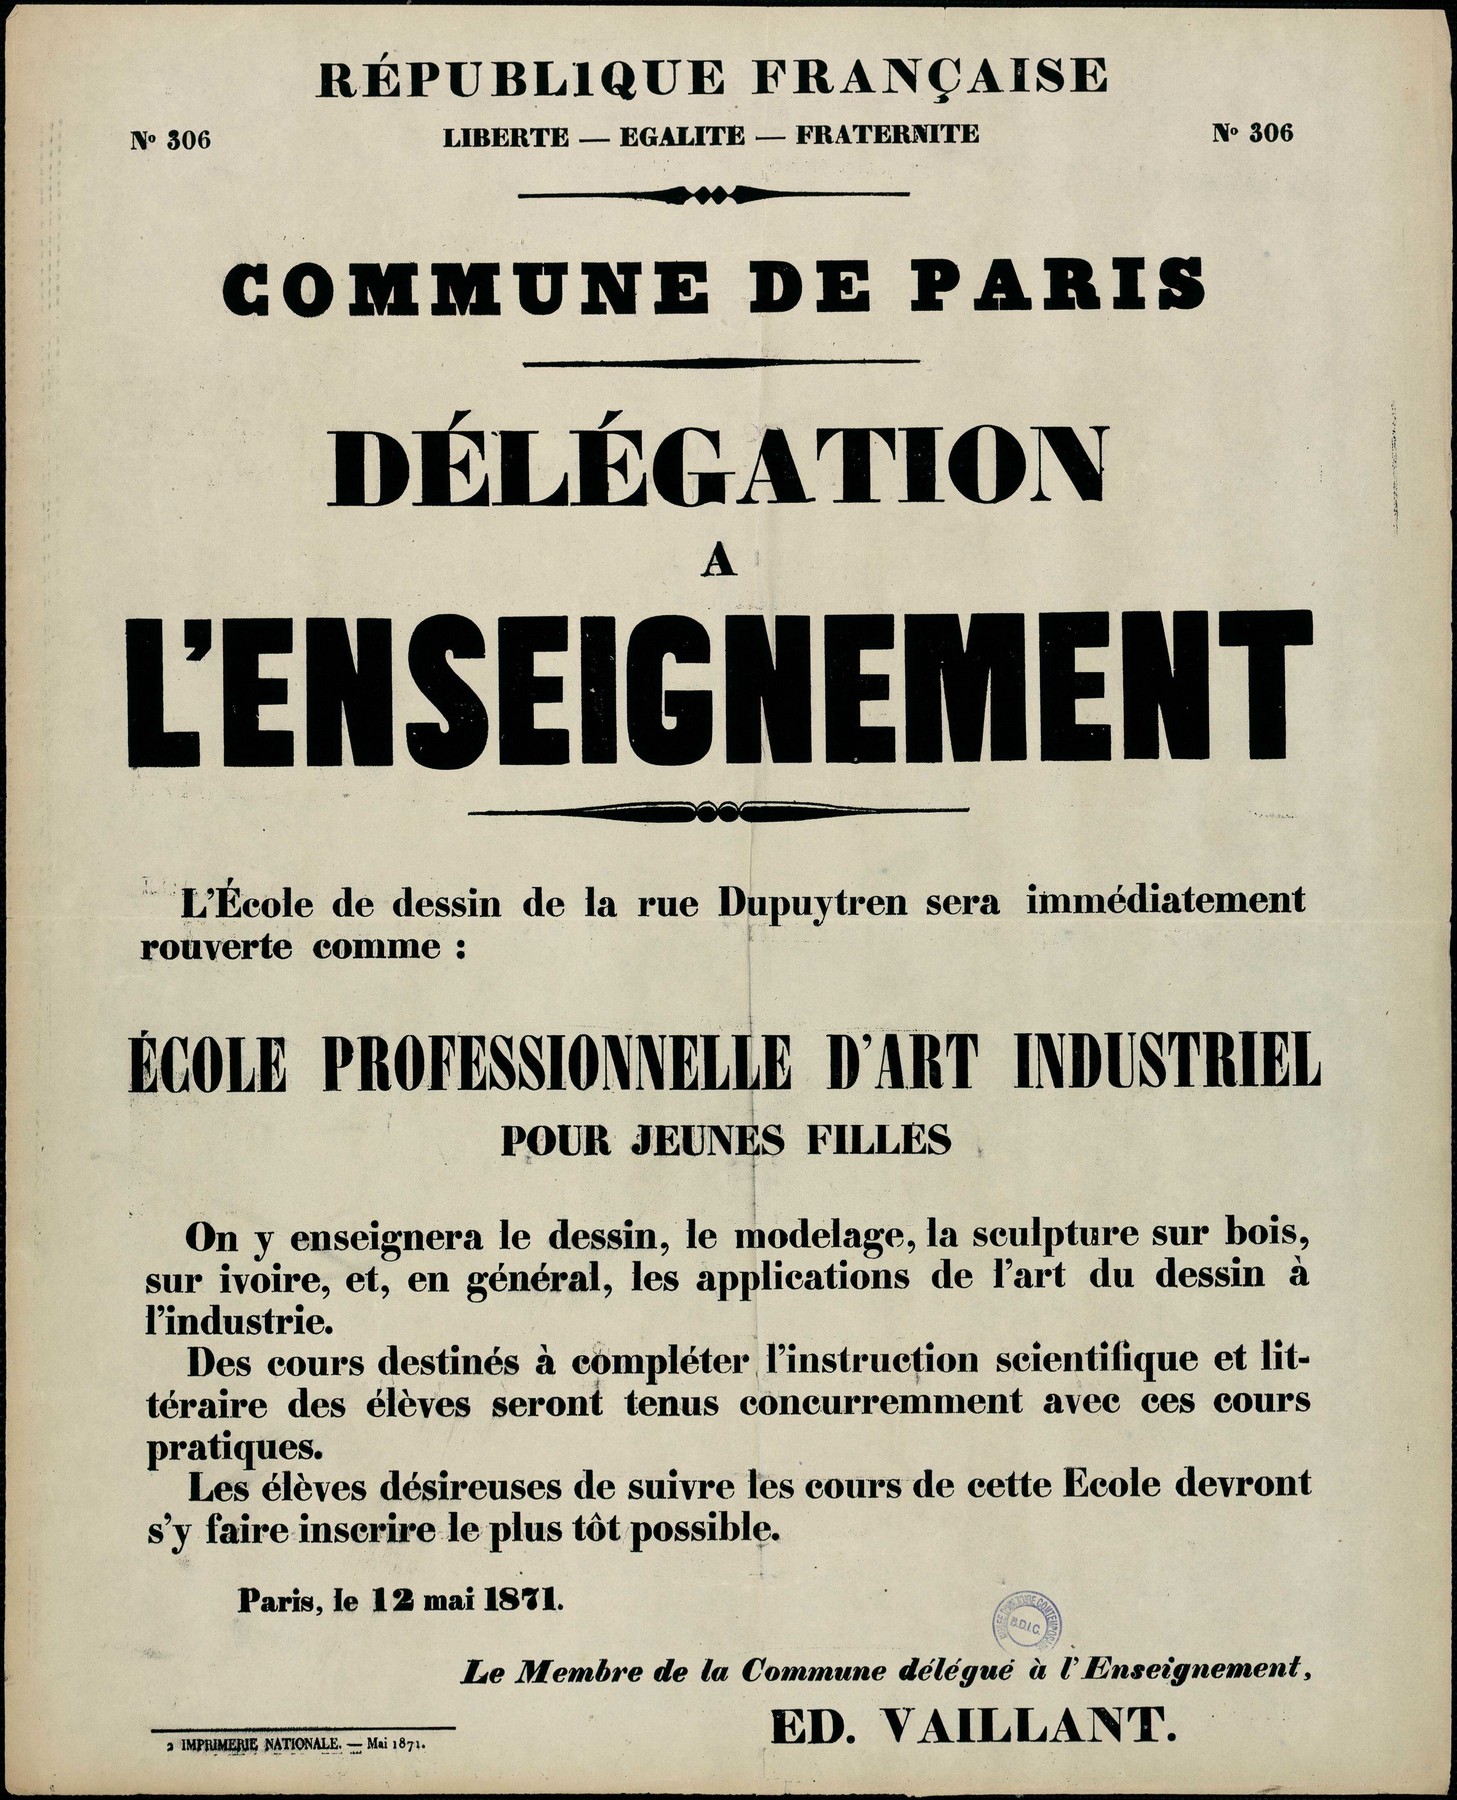 Affiche de la Xommune de Paris N° 306 du 12 mai 1871 - Création d'une école technique pour filles par Vaillant (source : La Contemporaine – Nanterre / argonnaute.parisnanterre.fr)